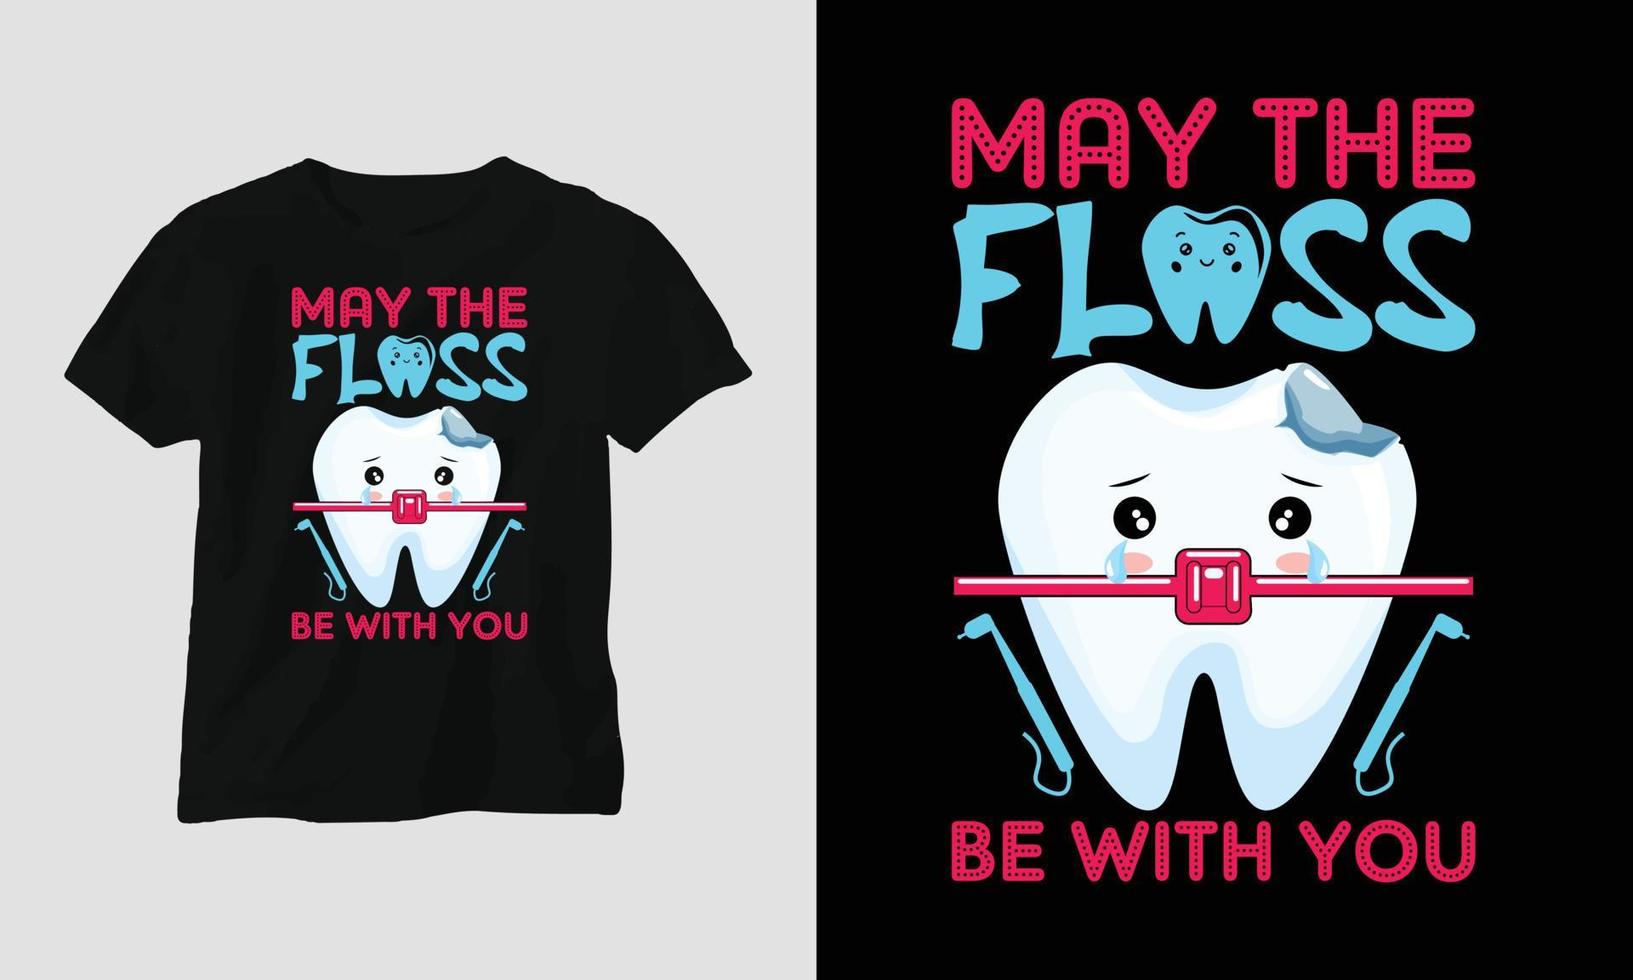 camiseta de dentista vetorial ou design bonito de pôster com dente de desenho animado, elementos dentários, etc. vetor